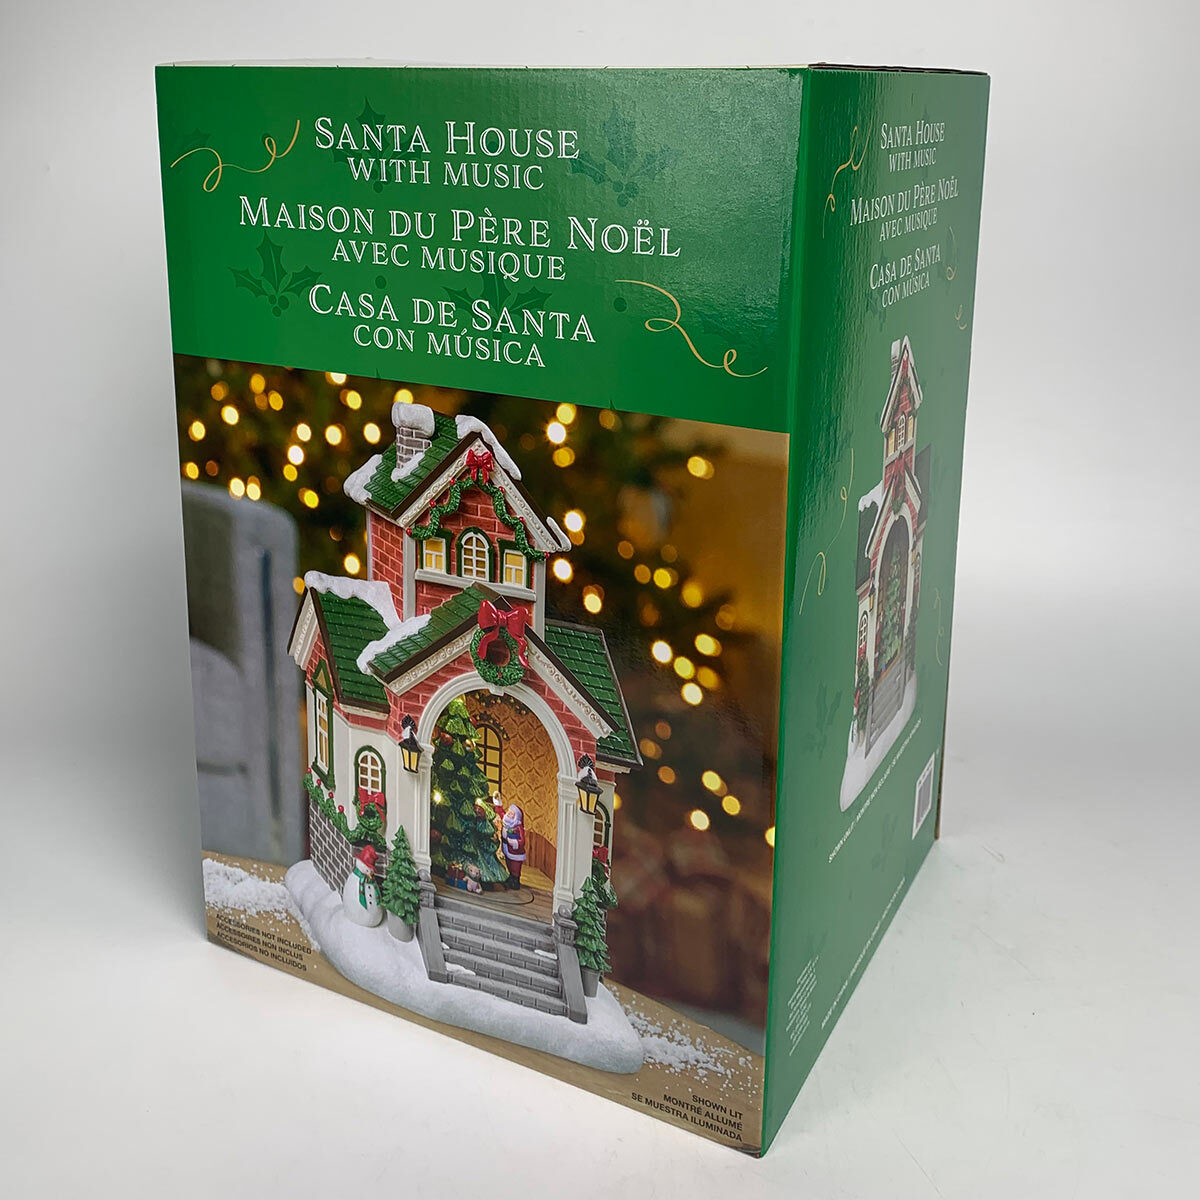 Buy Santa House Box Image at Costco.co.uk